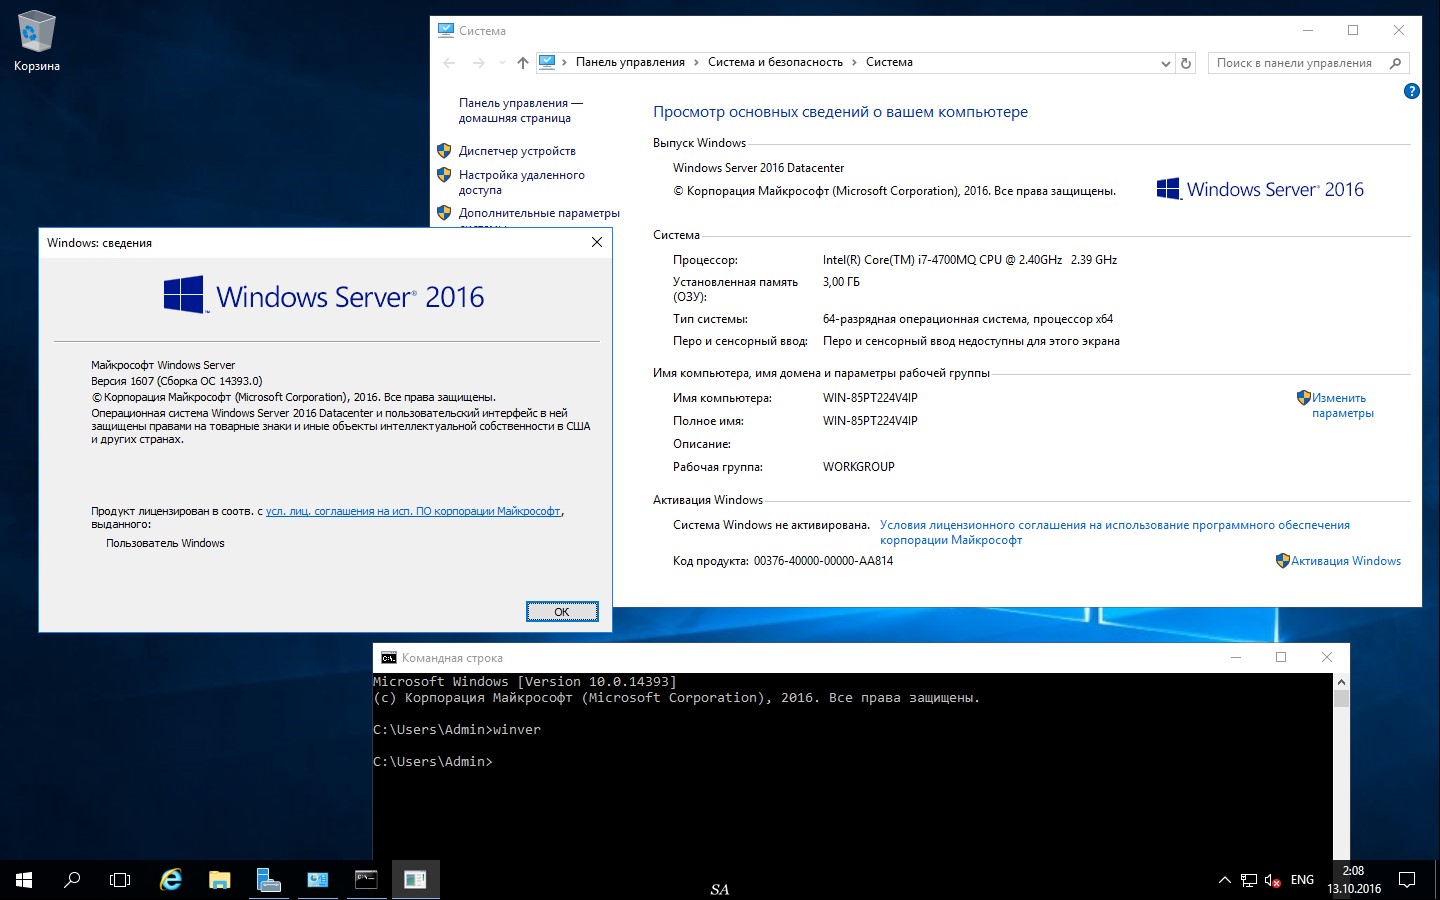 10 версия 1607. Windows 1607. Windows 10 Version 1607. Windows 10 multiple Edition build 1607 Final. 10.0.14393 Н/Д построение 14393.